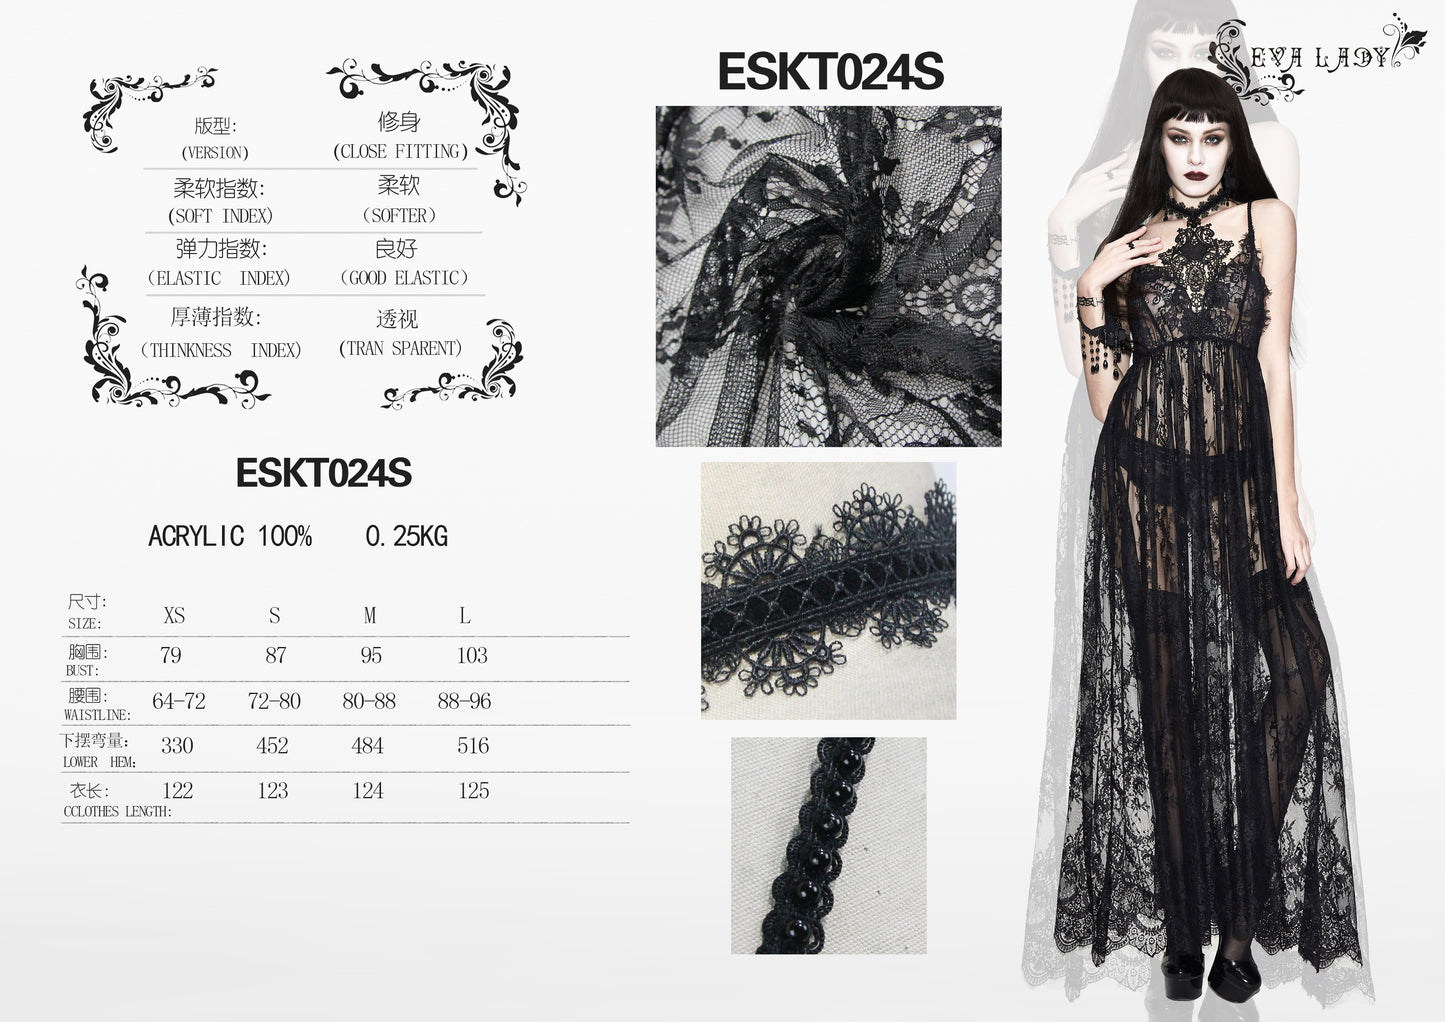 Eva Lady Gothic Sheer Lace Maxi Dress - Kate's Clothing